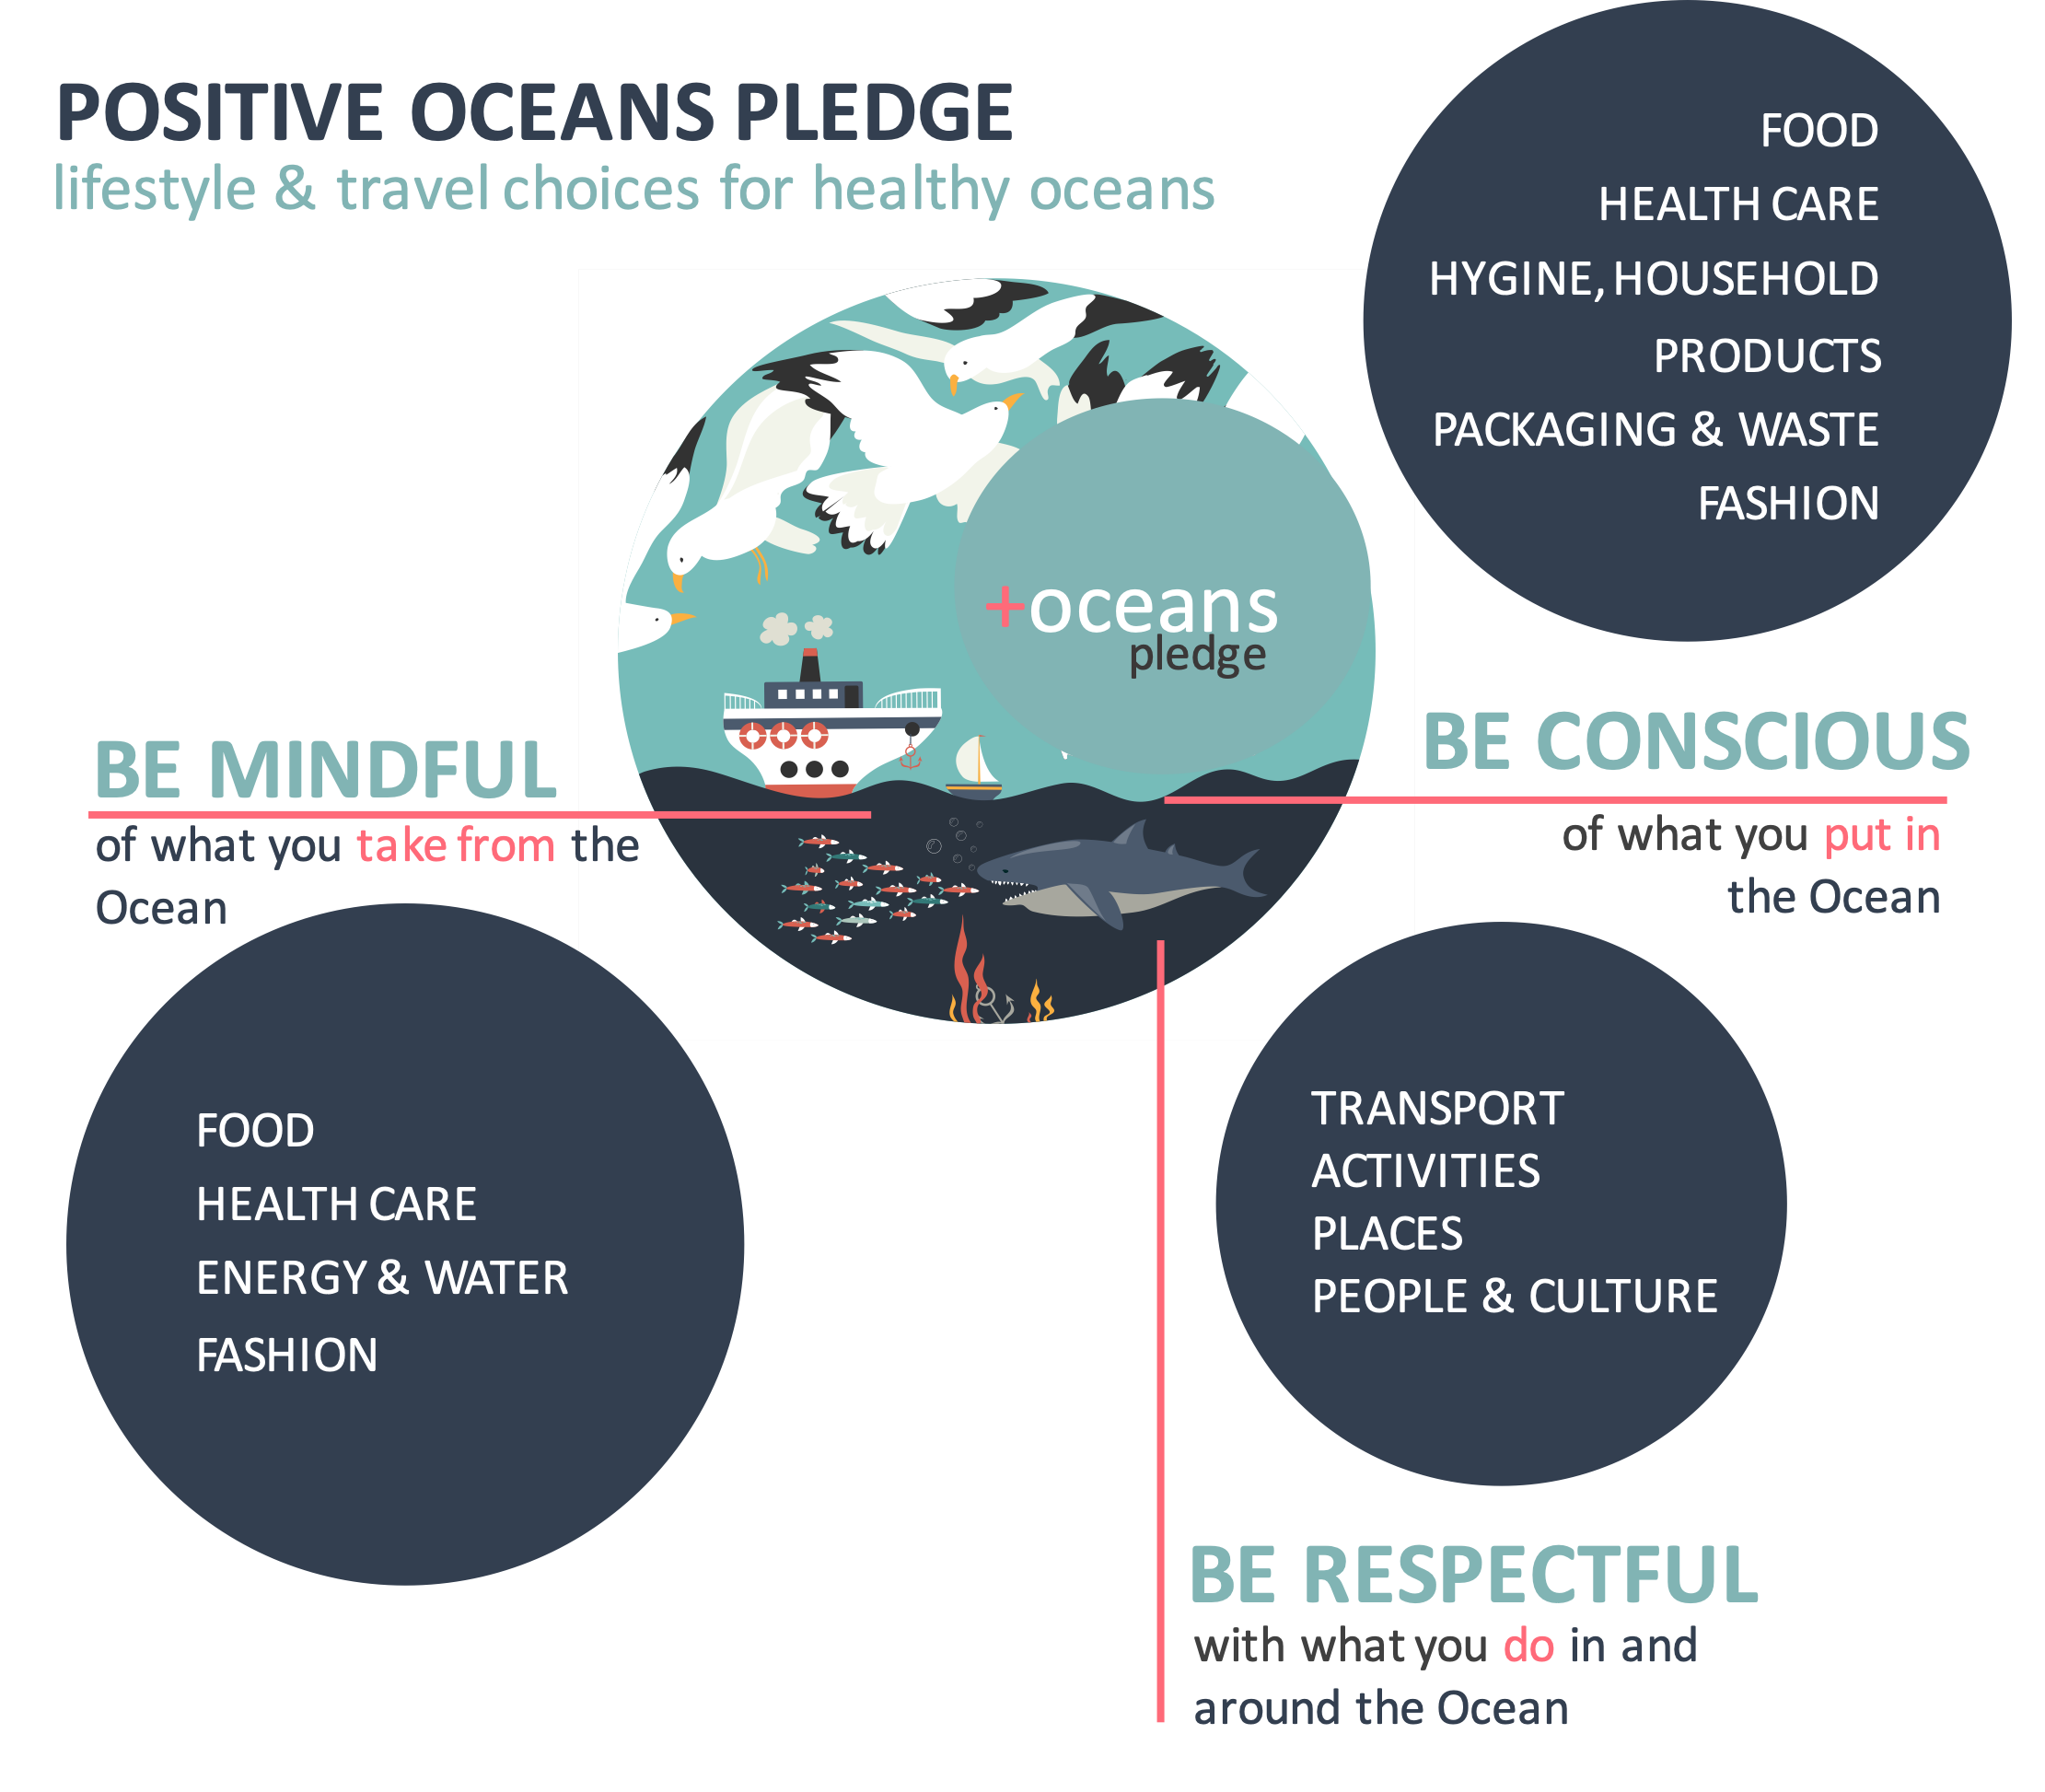 Positive Oceans Pledge overview